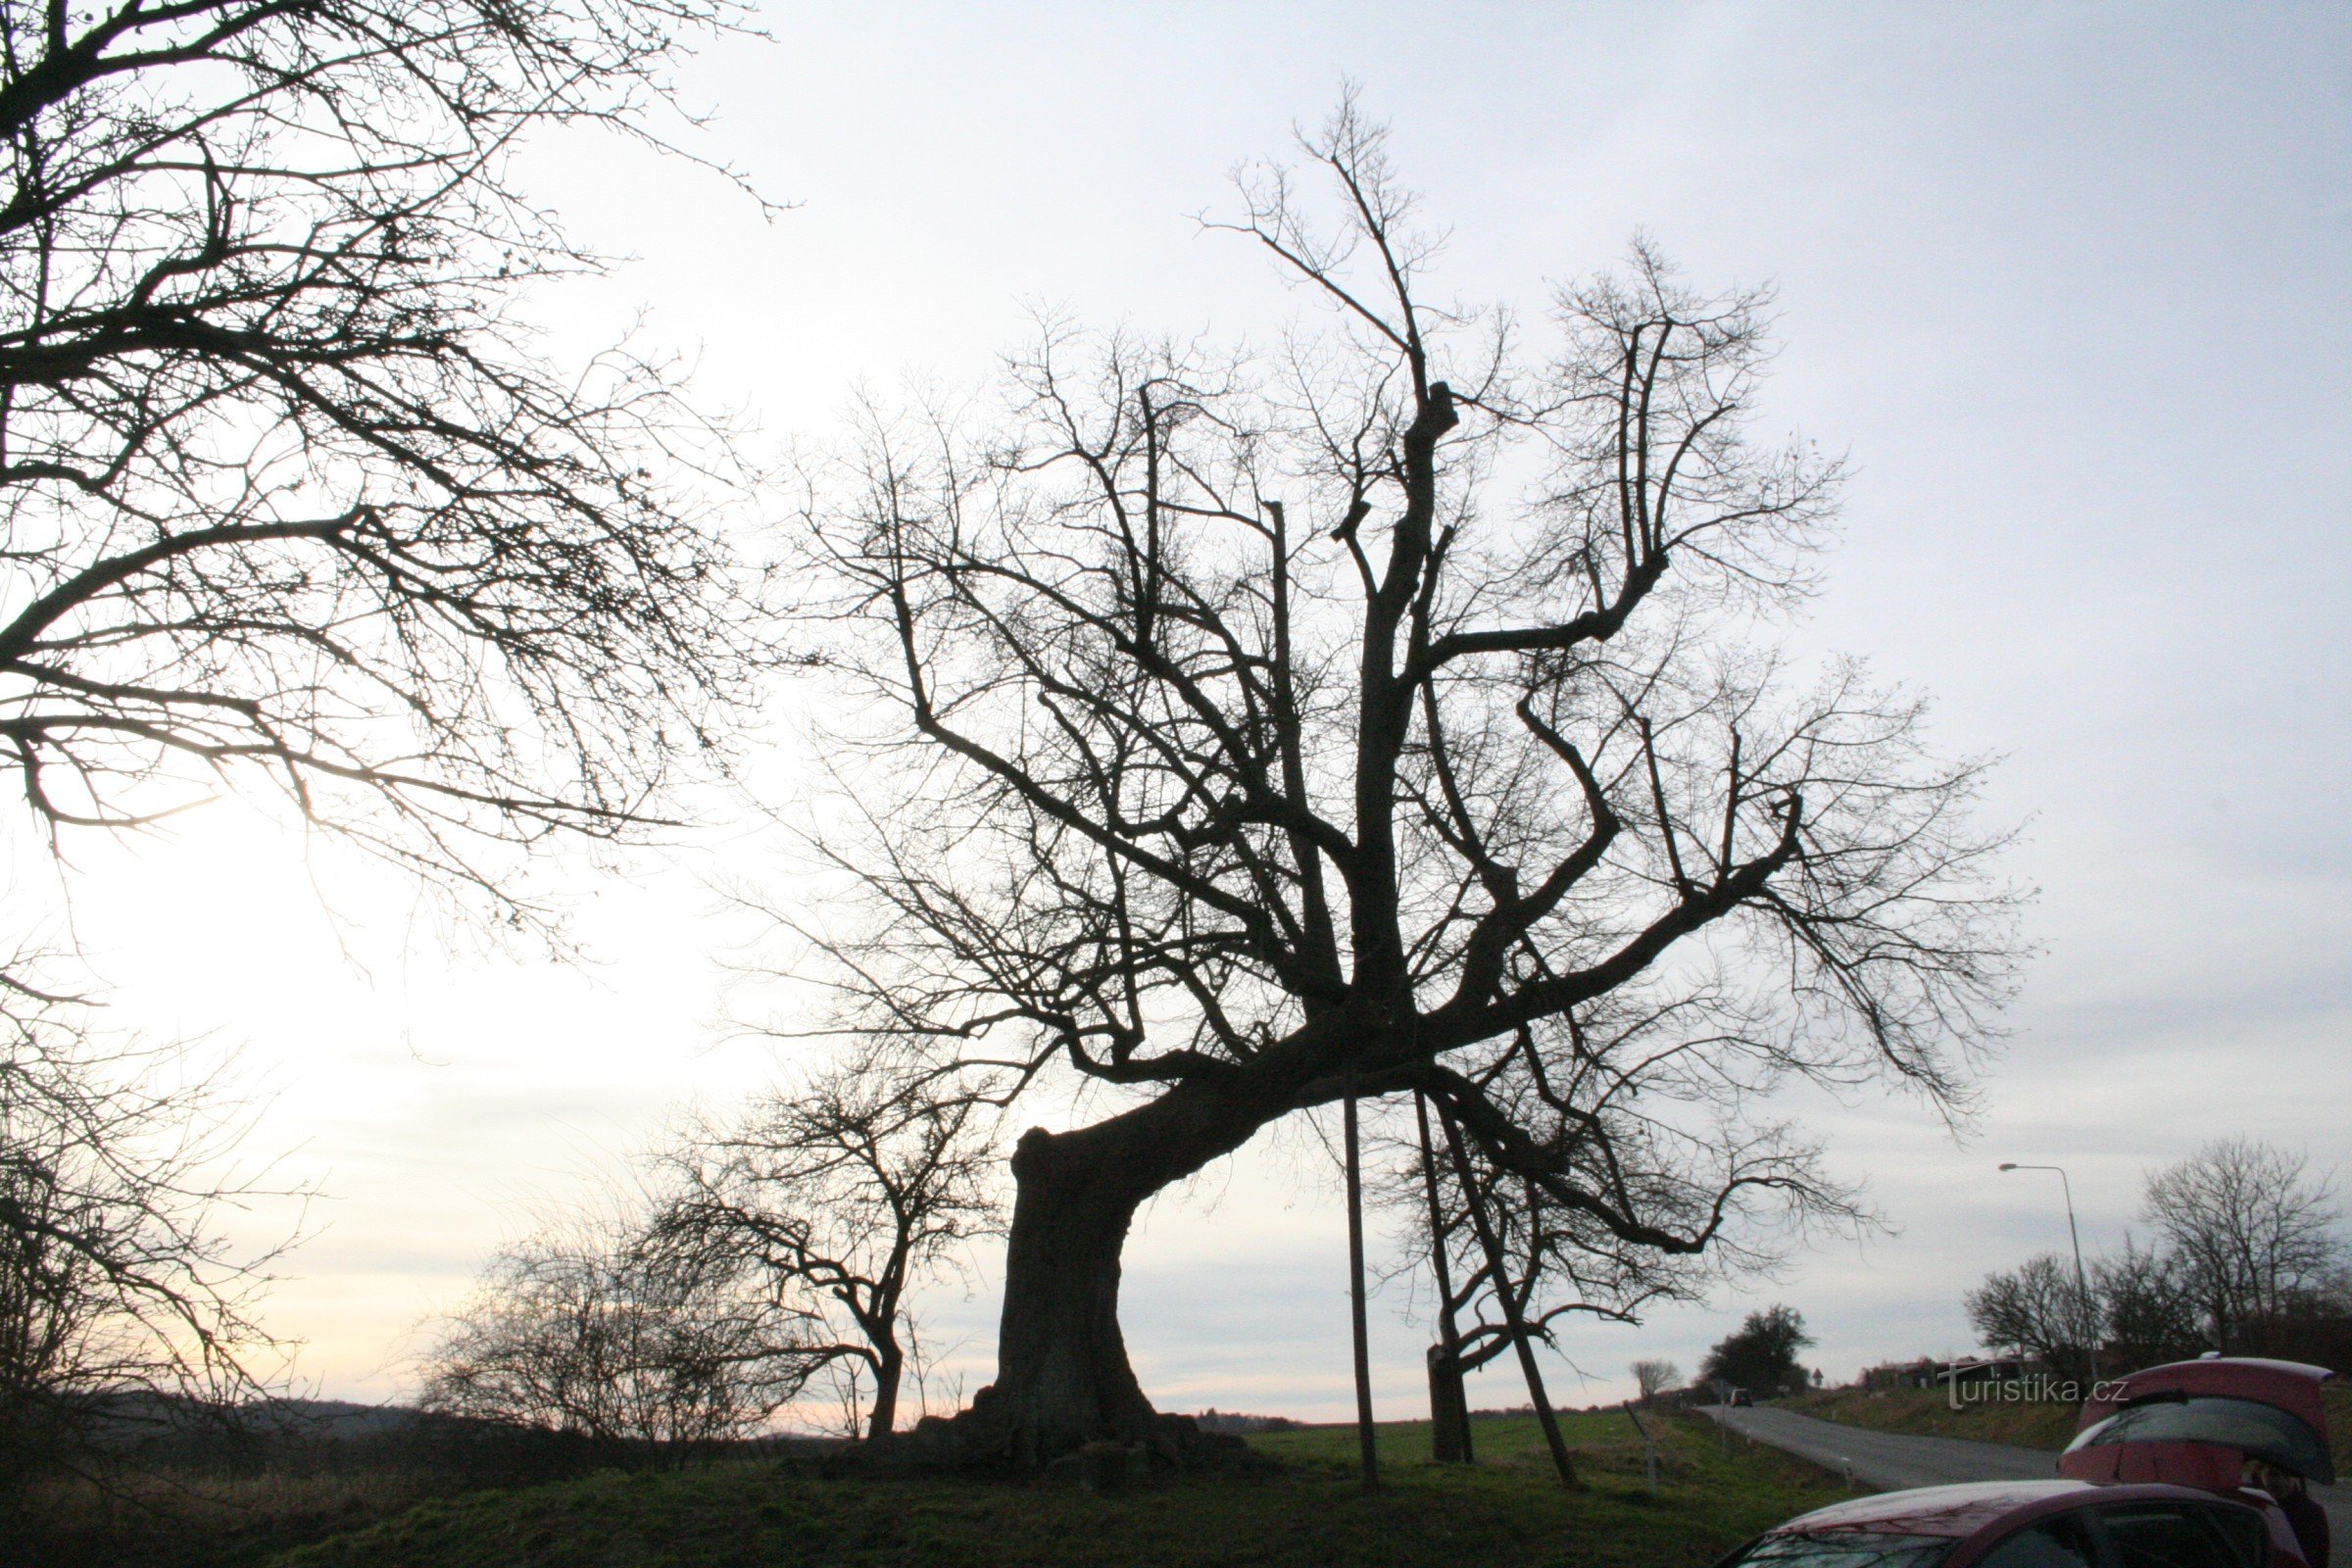 Αναμνηστικό δέντρο ασβέστη στο Drahelčice